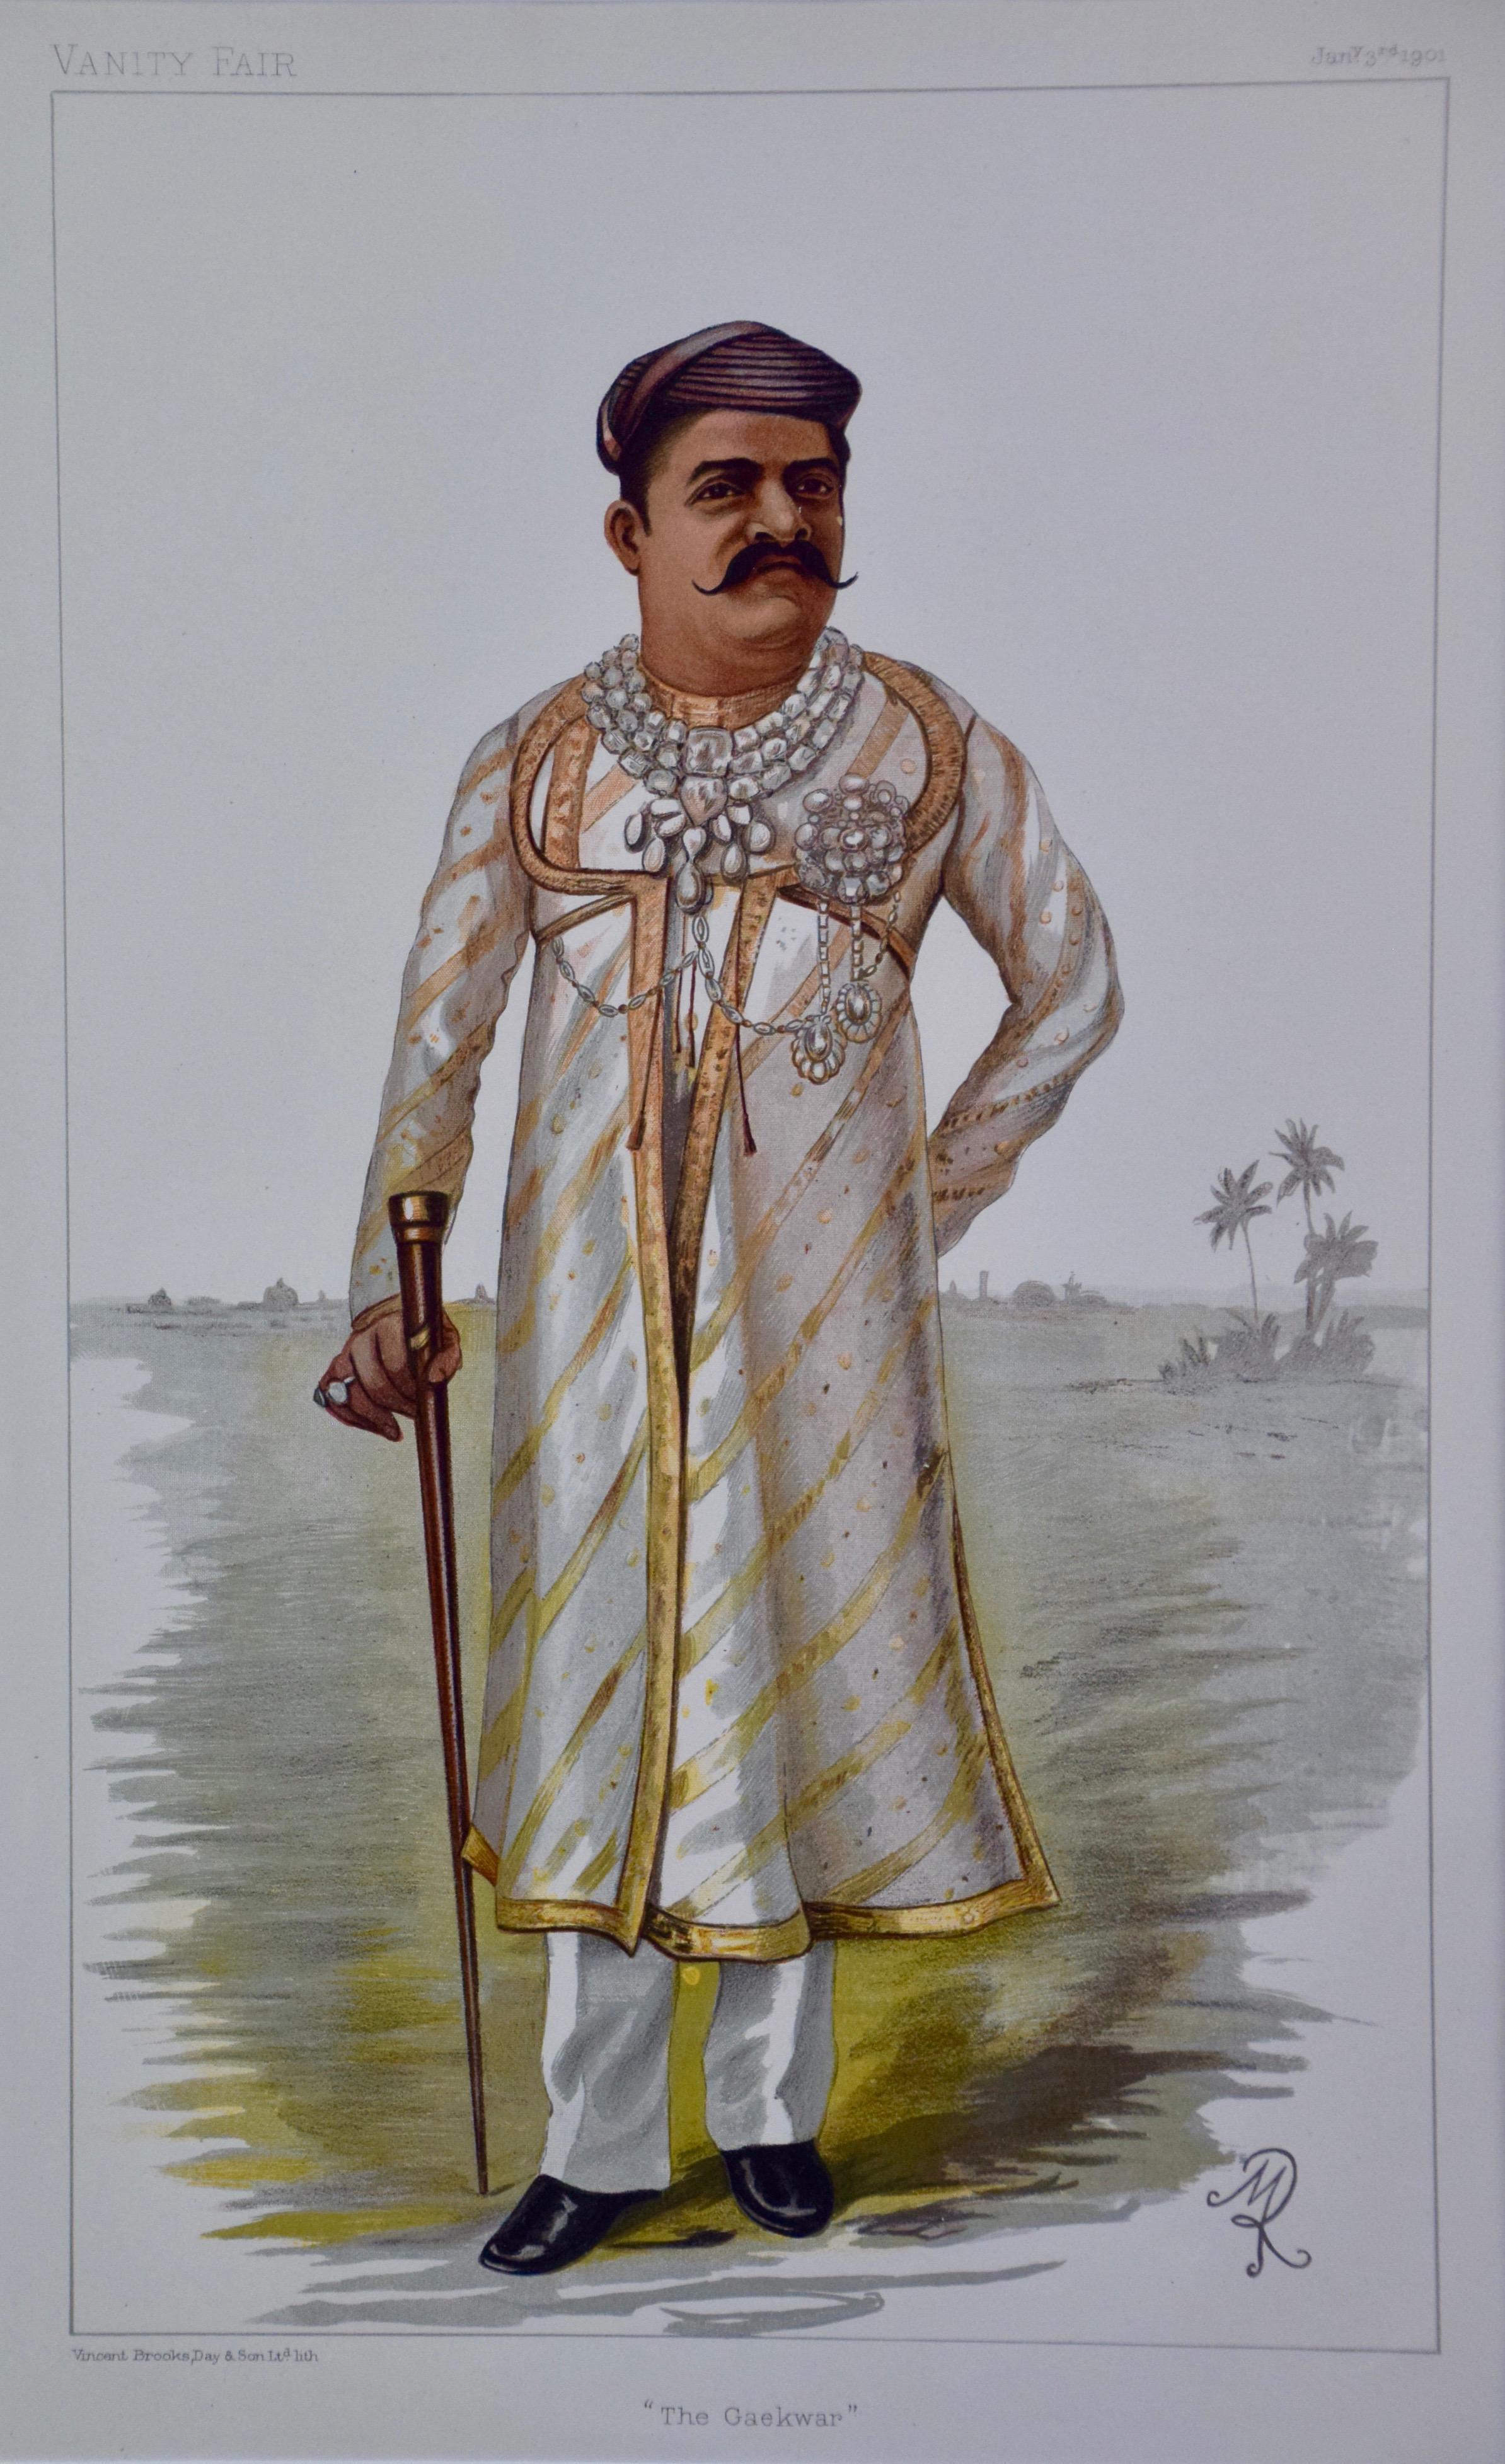 Farbige Waschtischschnitzerei der „Gaekwar des Barock“ (Prinz von Indien)   – Print von Unknown